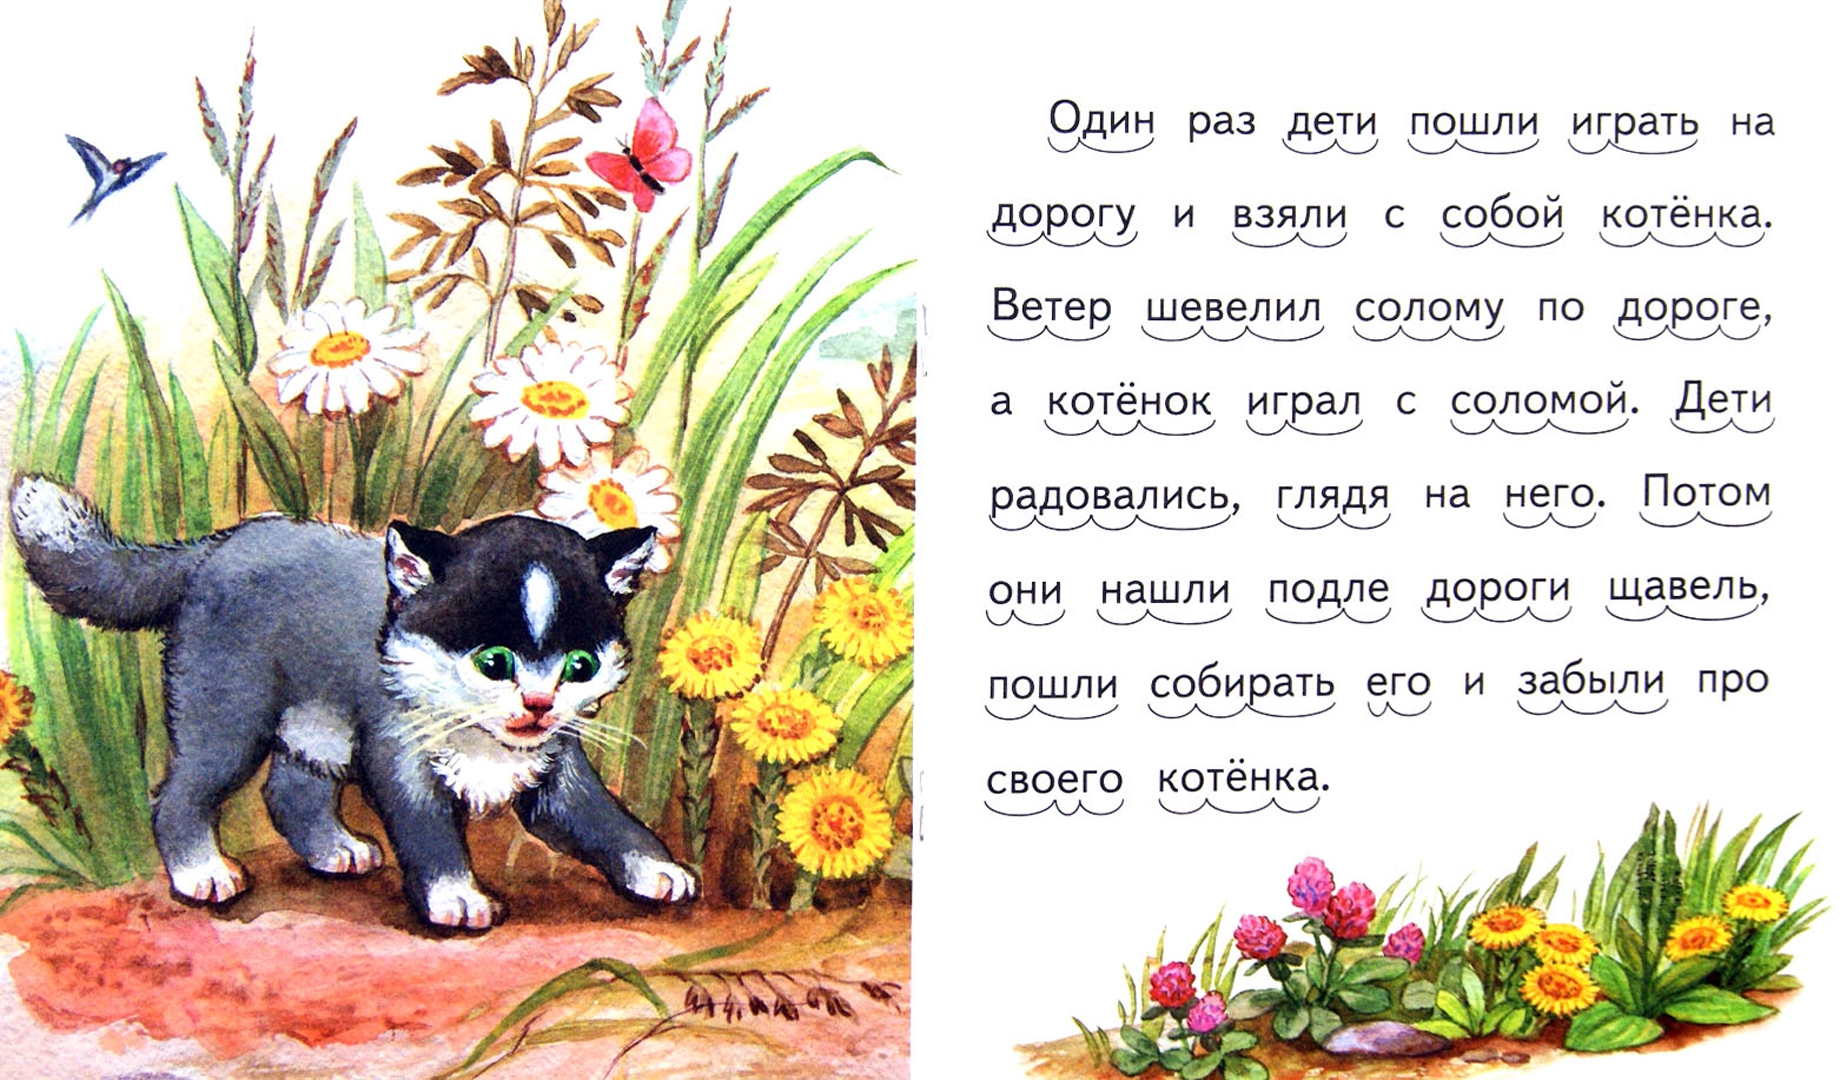 Иллюстрация 1 из 15 для Котёнок - Лев Толстой | Лабиринт - книги. Источник: Лабиринт